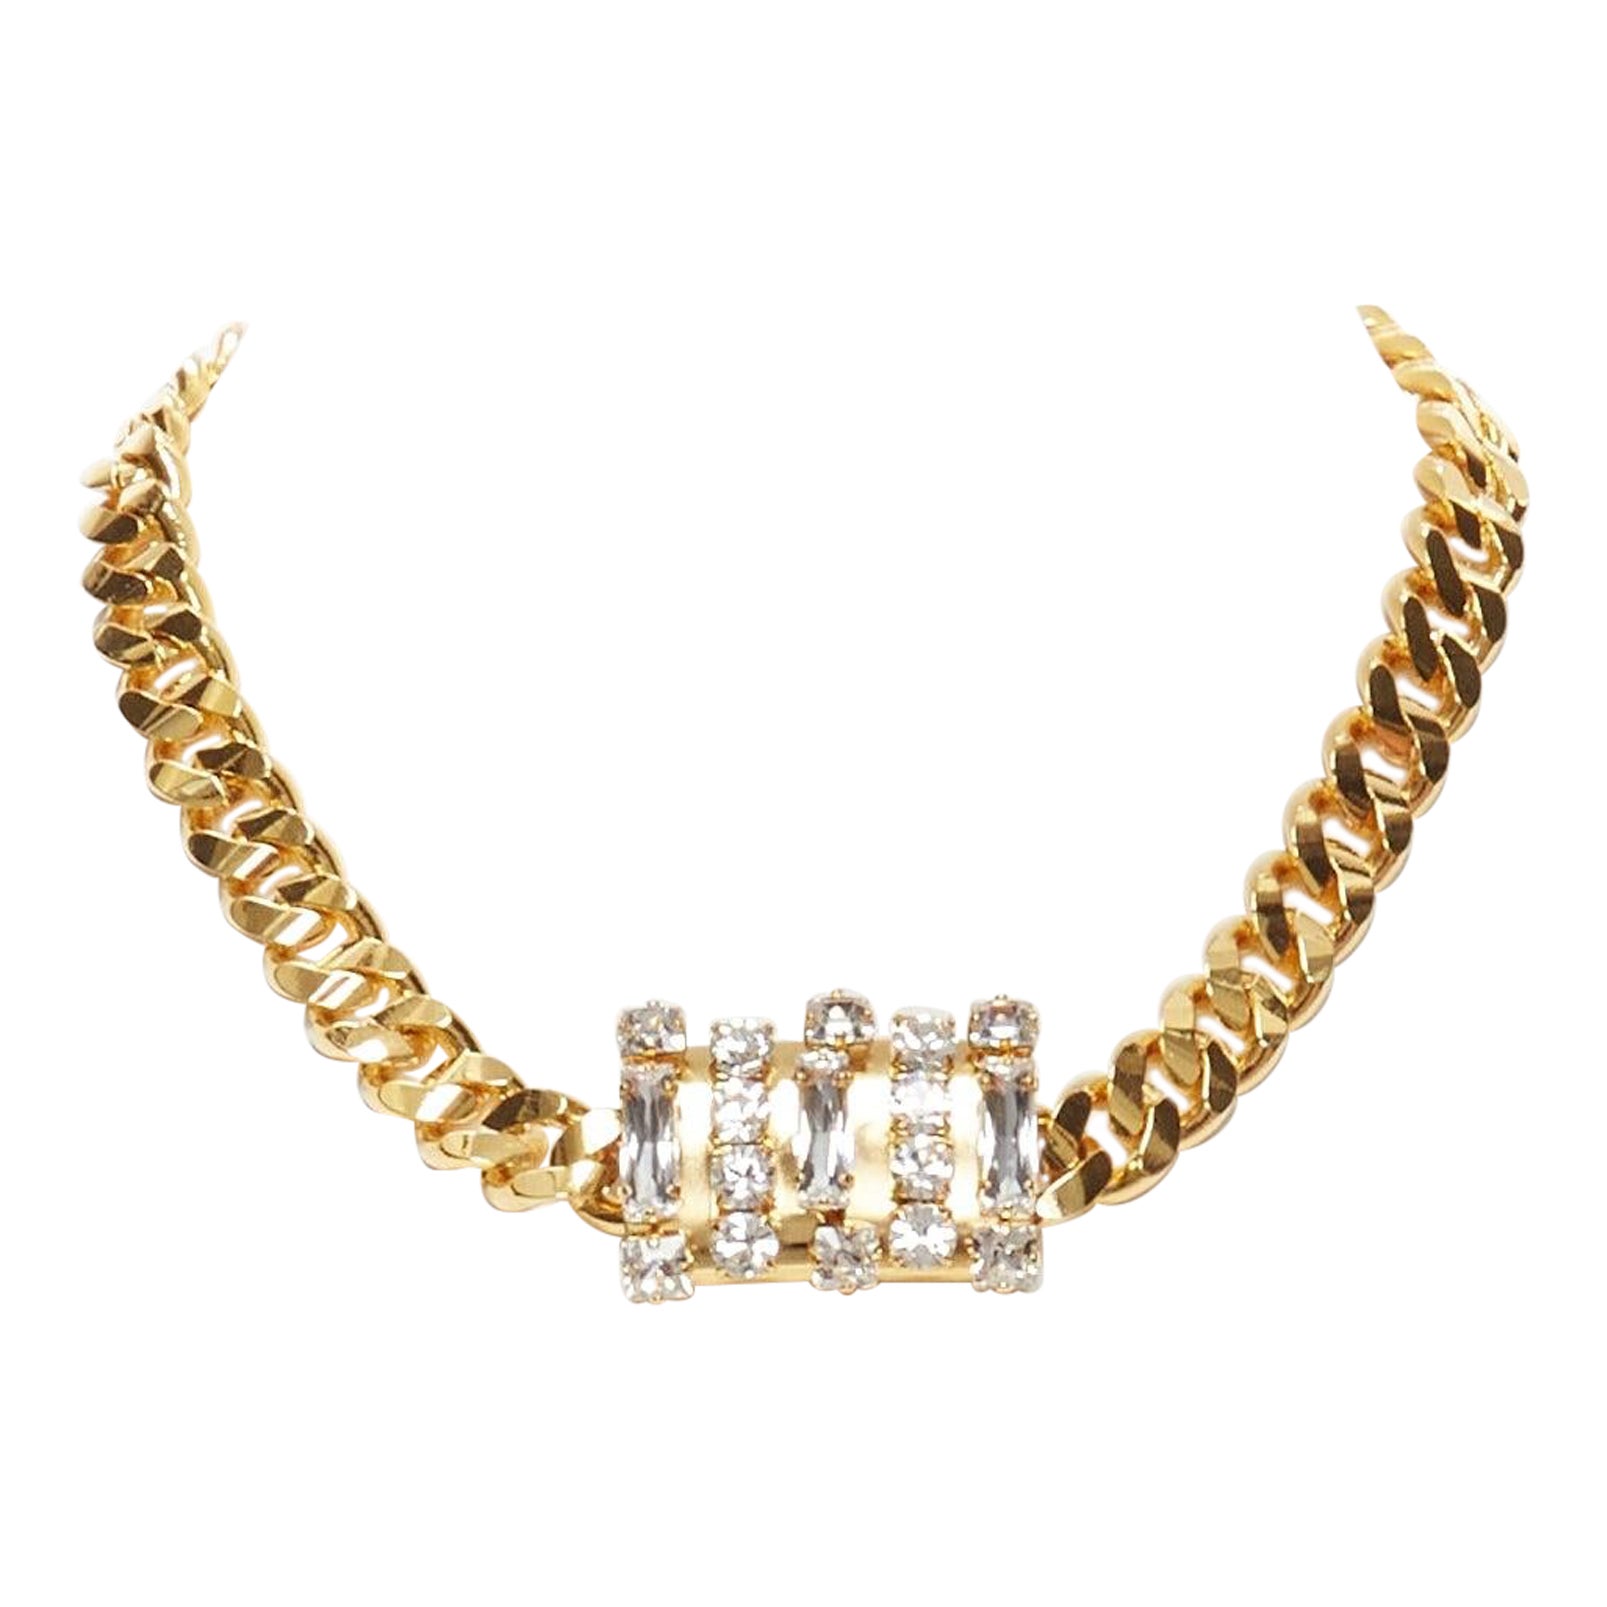 TOGA ARCHIVES Collier chaîne en métal doré avec bijou en cristal clair